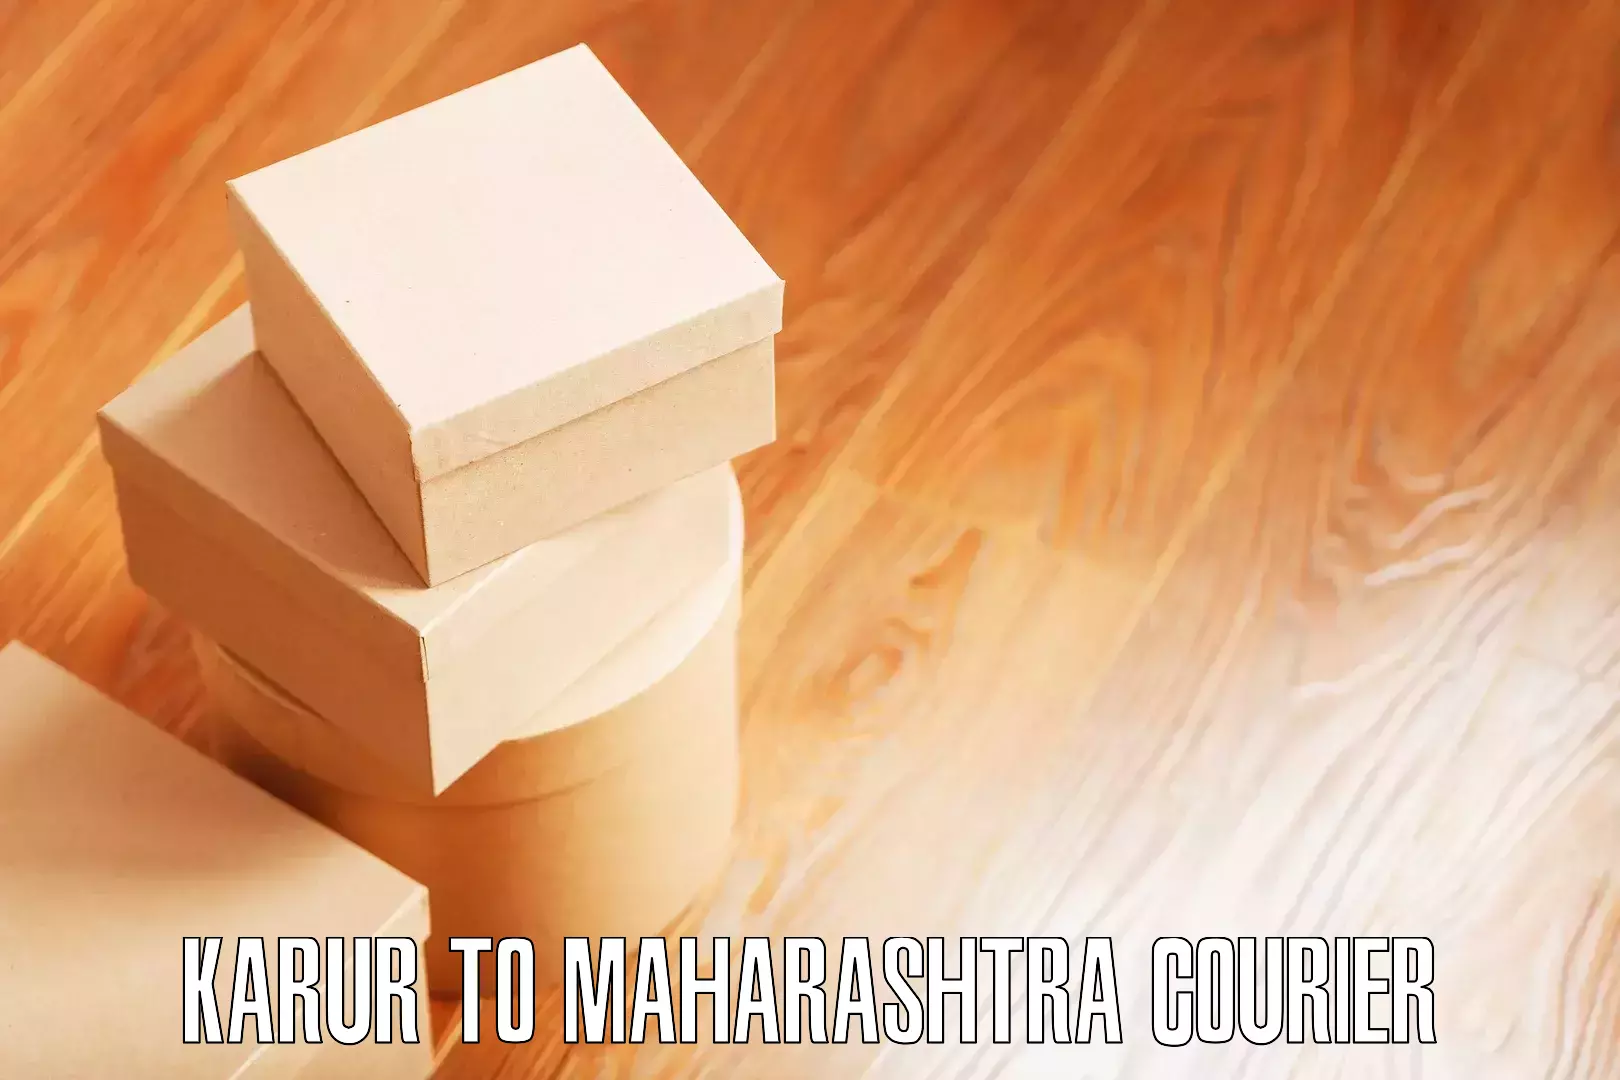 Furniture transport services Karur to Maharashtra